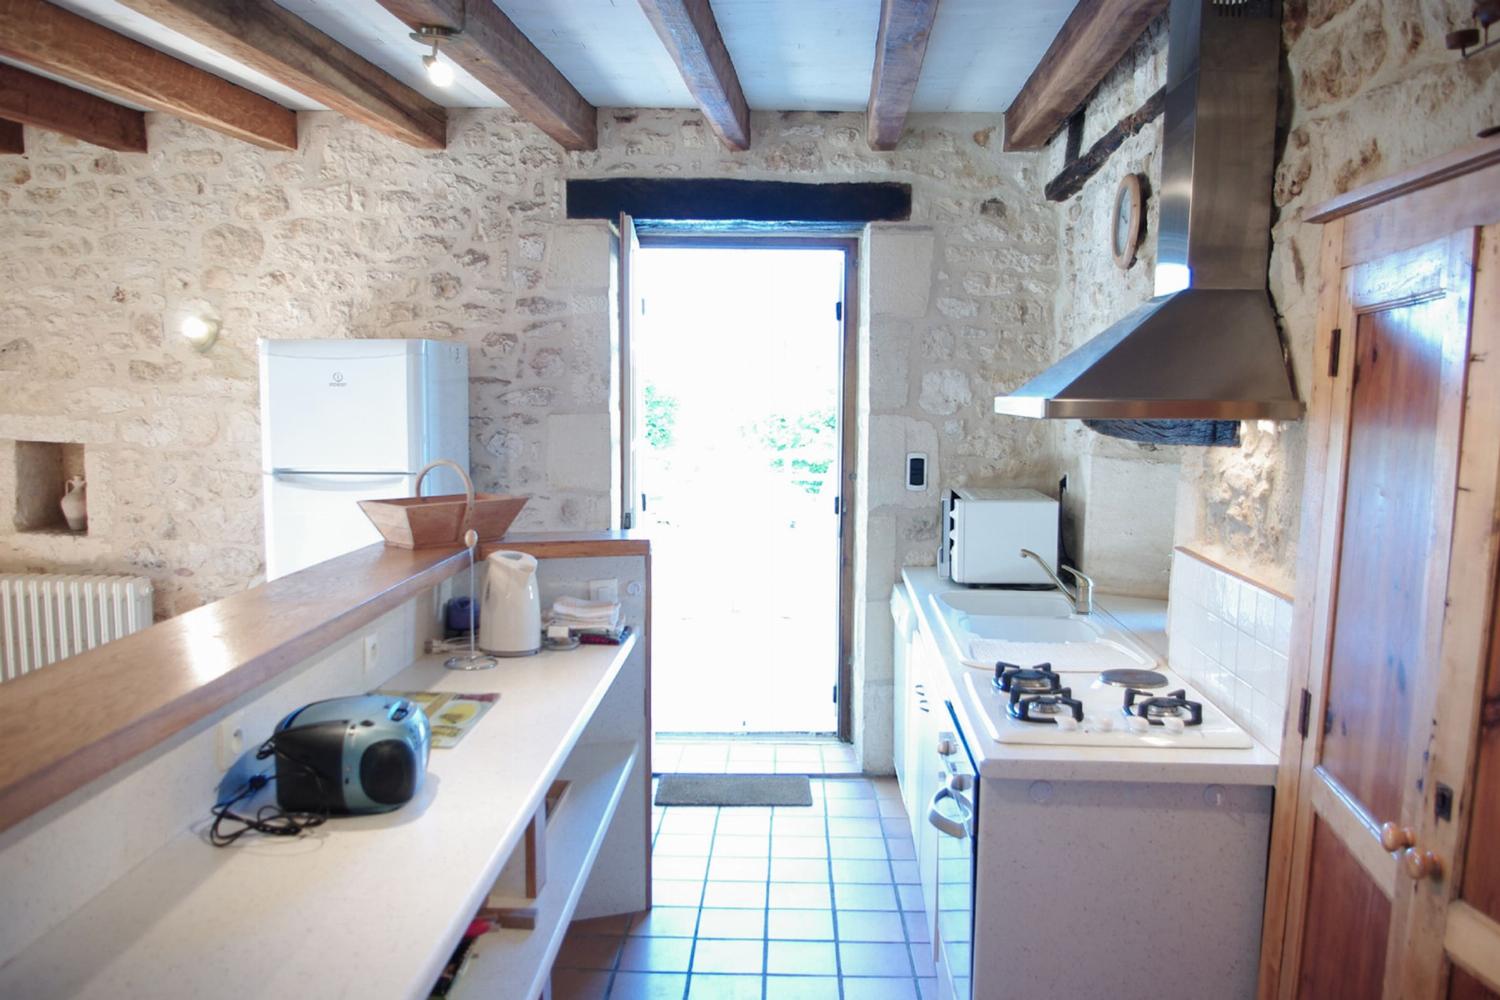 Cuisine | Location de vacances en Dordogne